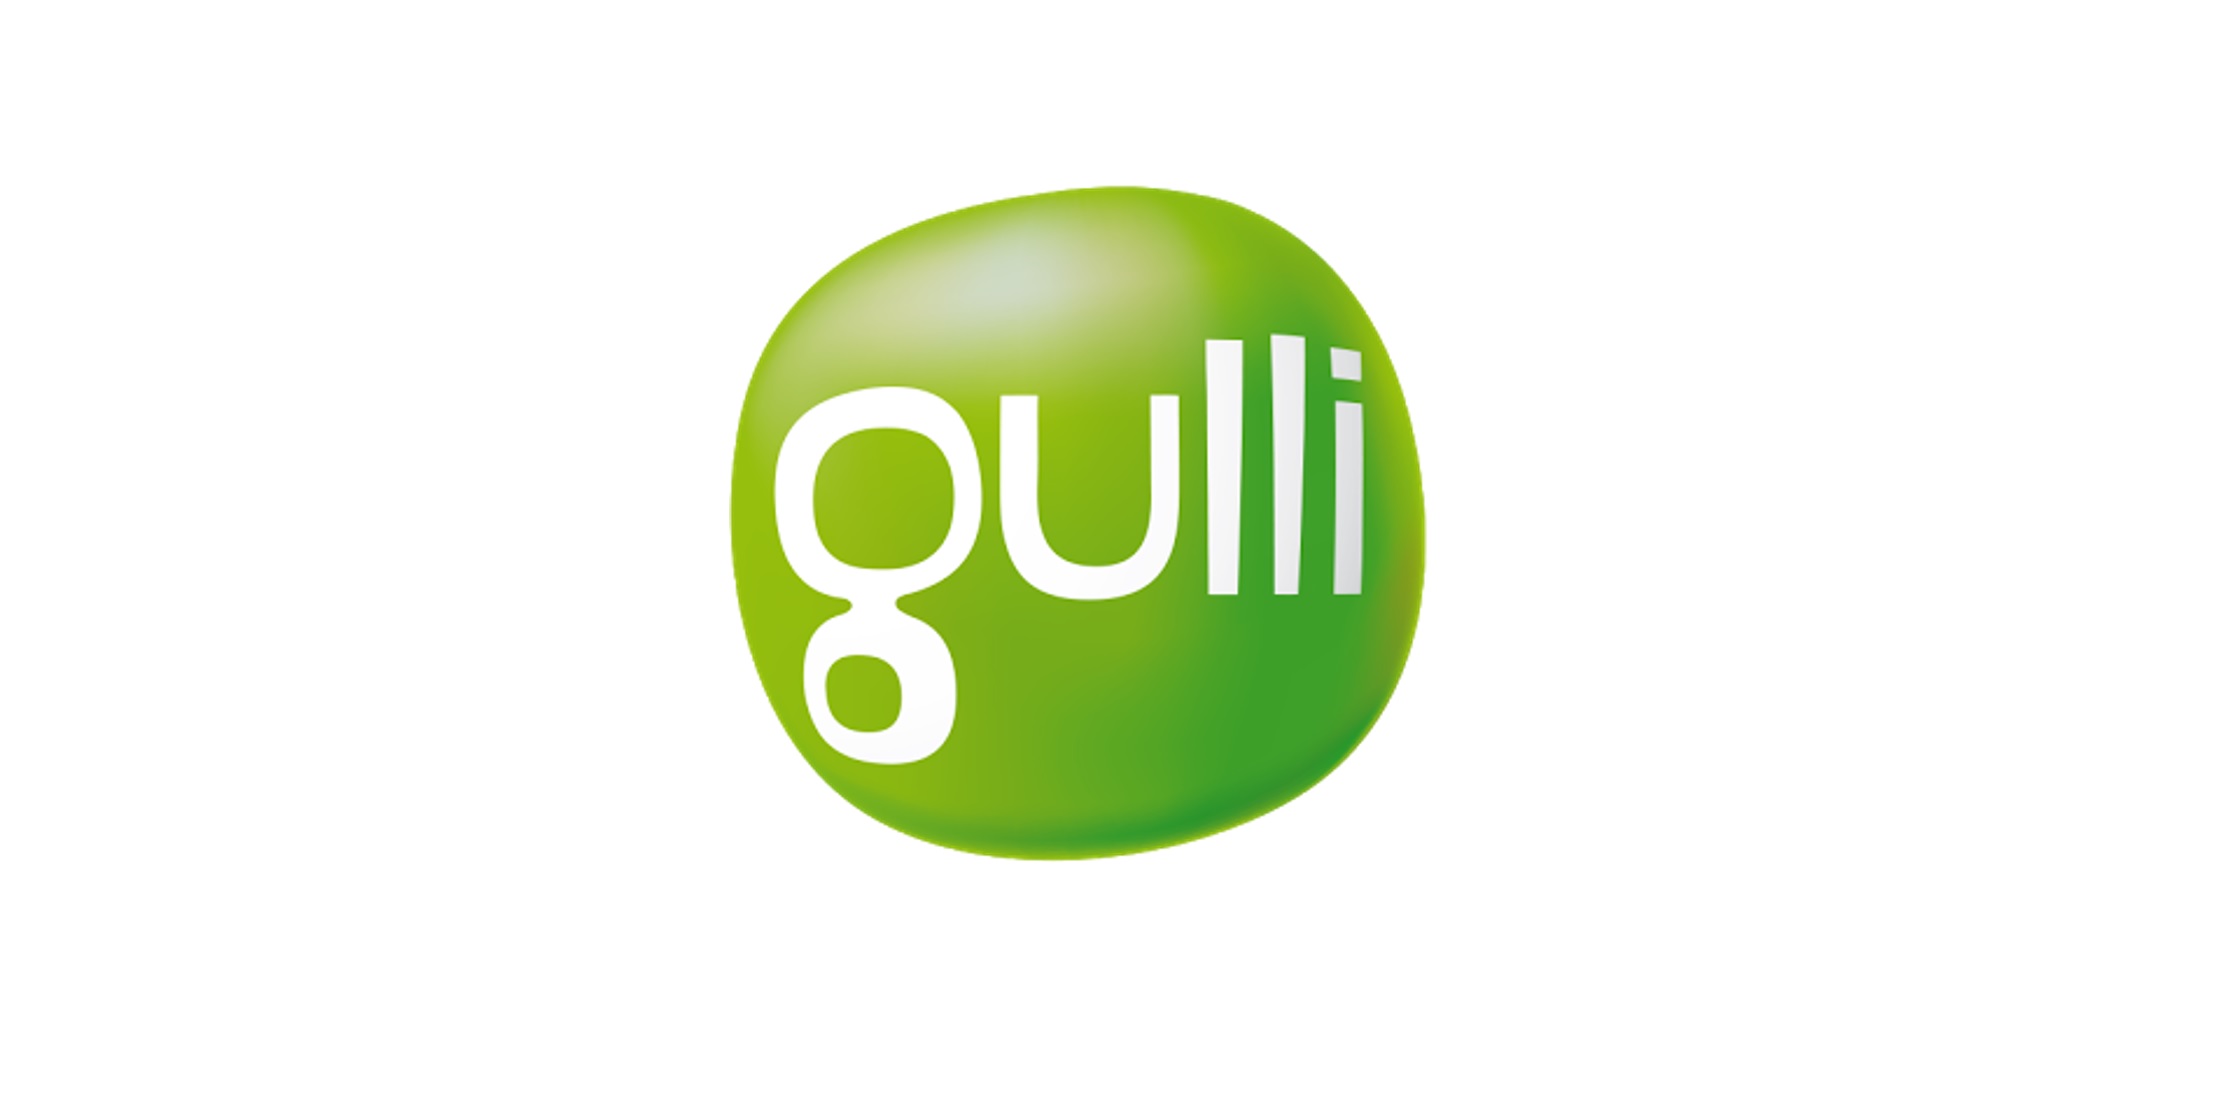 La chaîne TV « Gulli » ne diffusera plus de spectacles avec des animaux sauvages